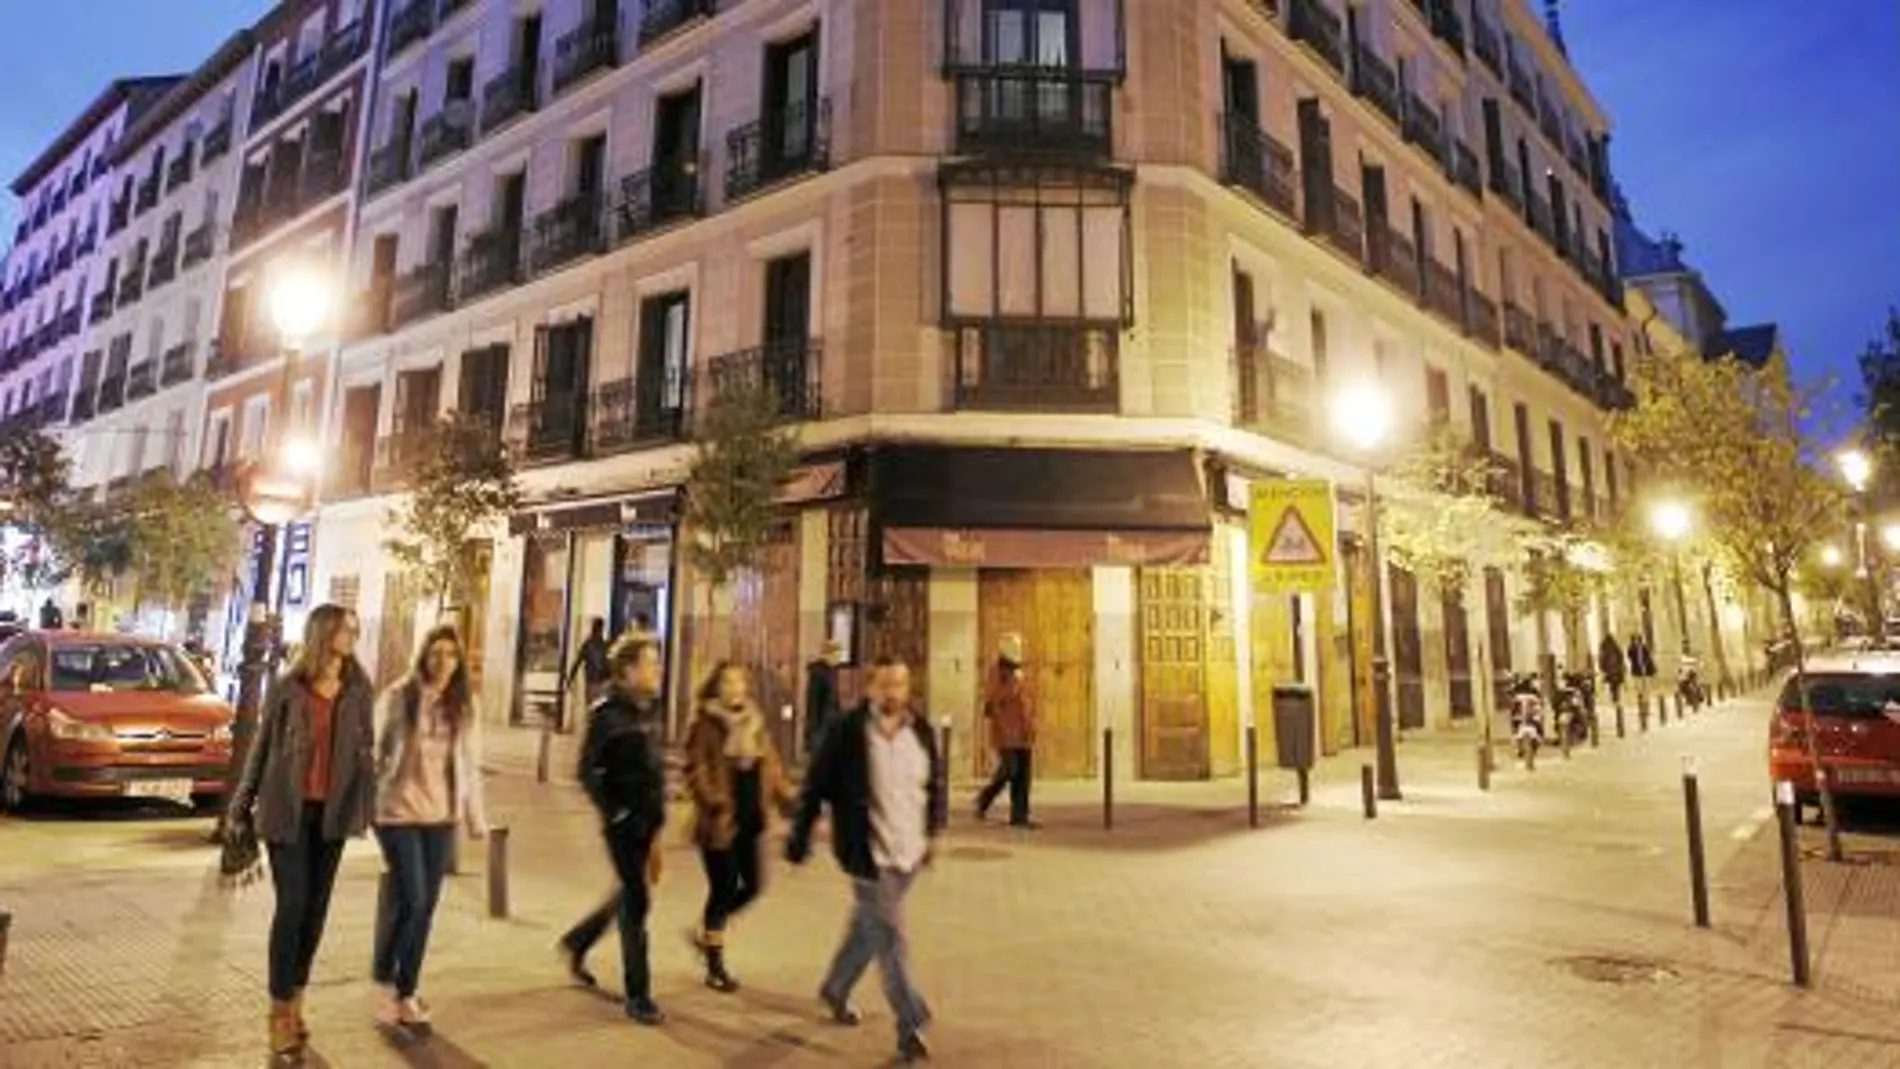 La intervención en Hortaleza se ha realizado de manera integral en todo el barrio, reformando las calles, infraestructuras y el mobiliario urbano, y otorgando ayudas para la rehabilitación de edificios